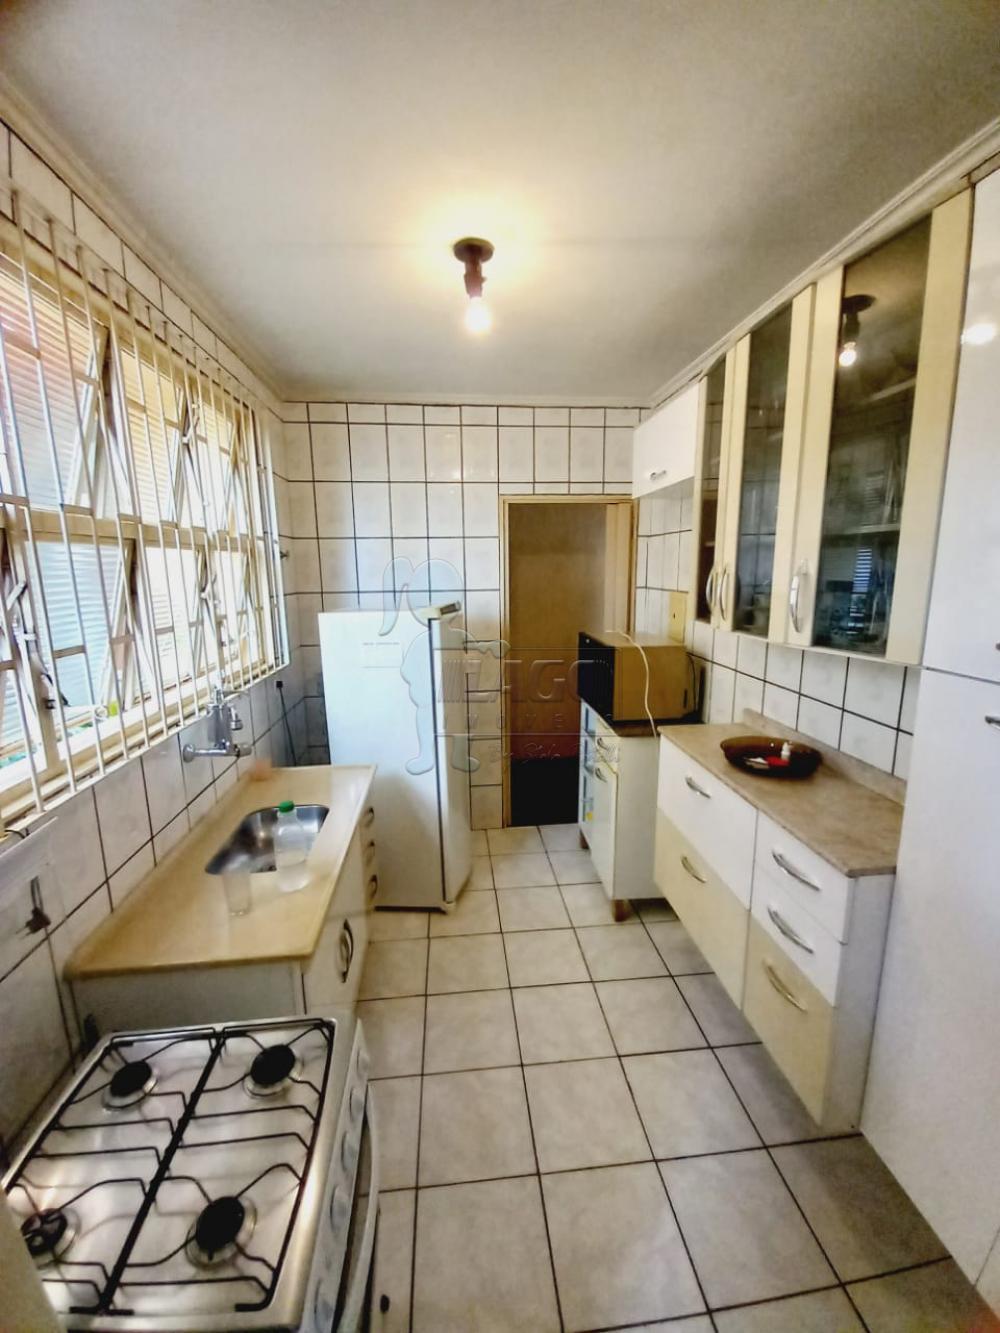 Comprar Apartamentos / Padrão em Ribeirão Preto R$ 160.000,00 - Foto 5